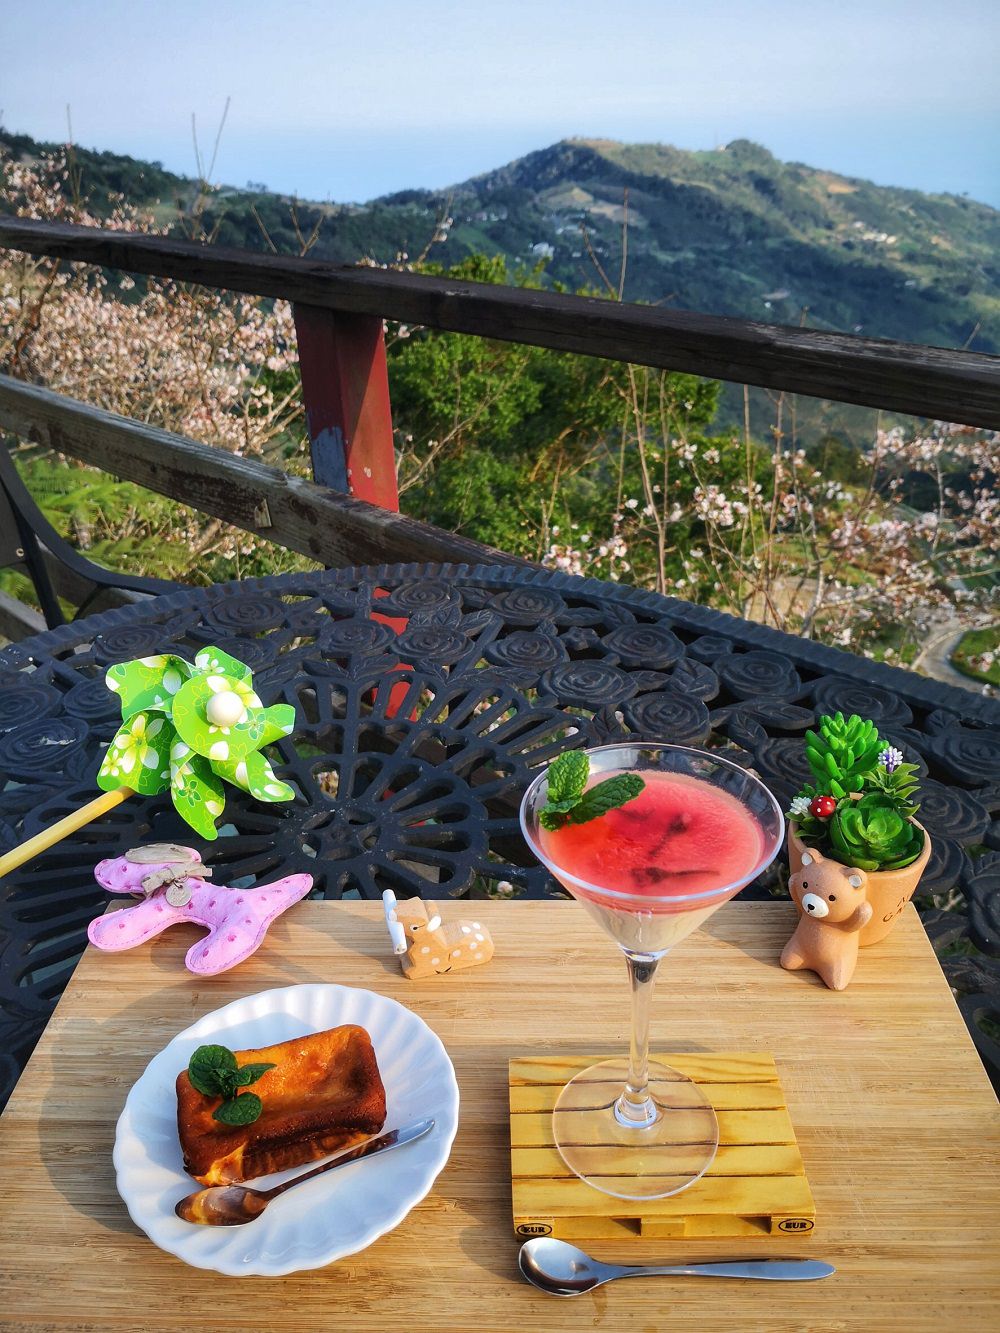 「環山雅築」的下午茶可以端到戶外露天座位，邊賞櫻花山景邊享用。